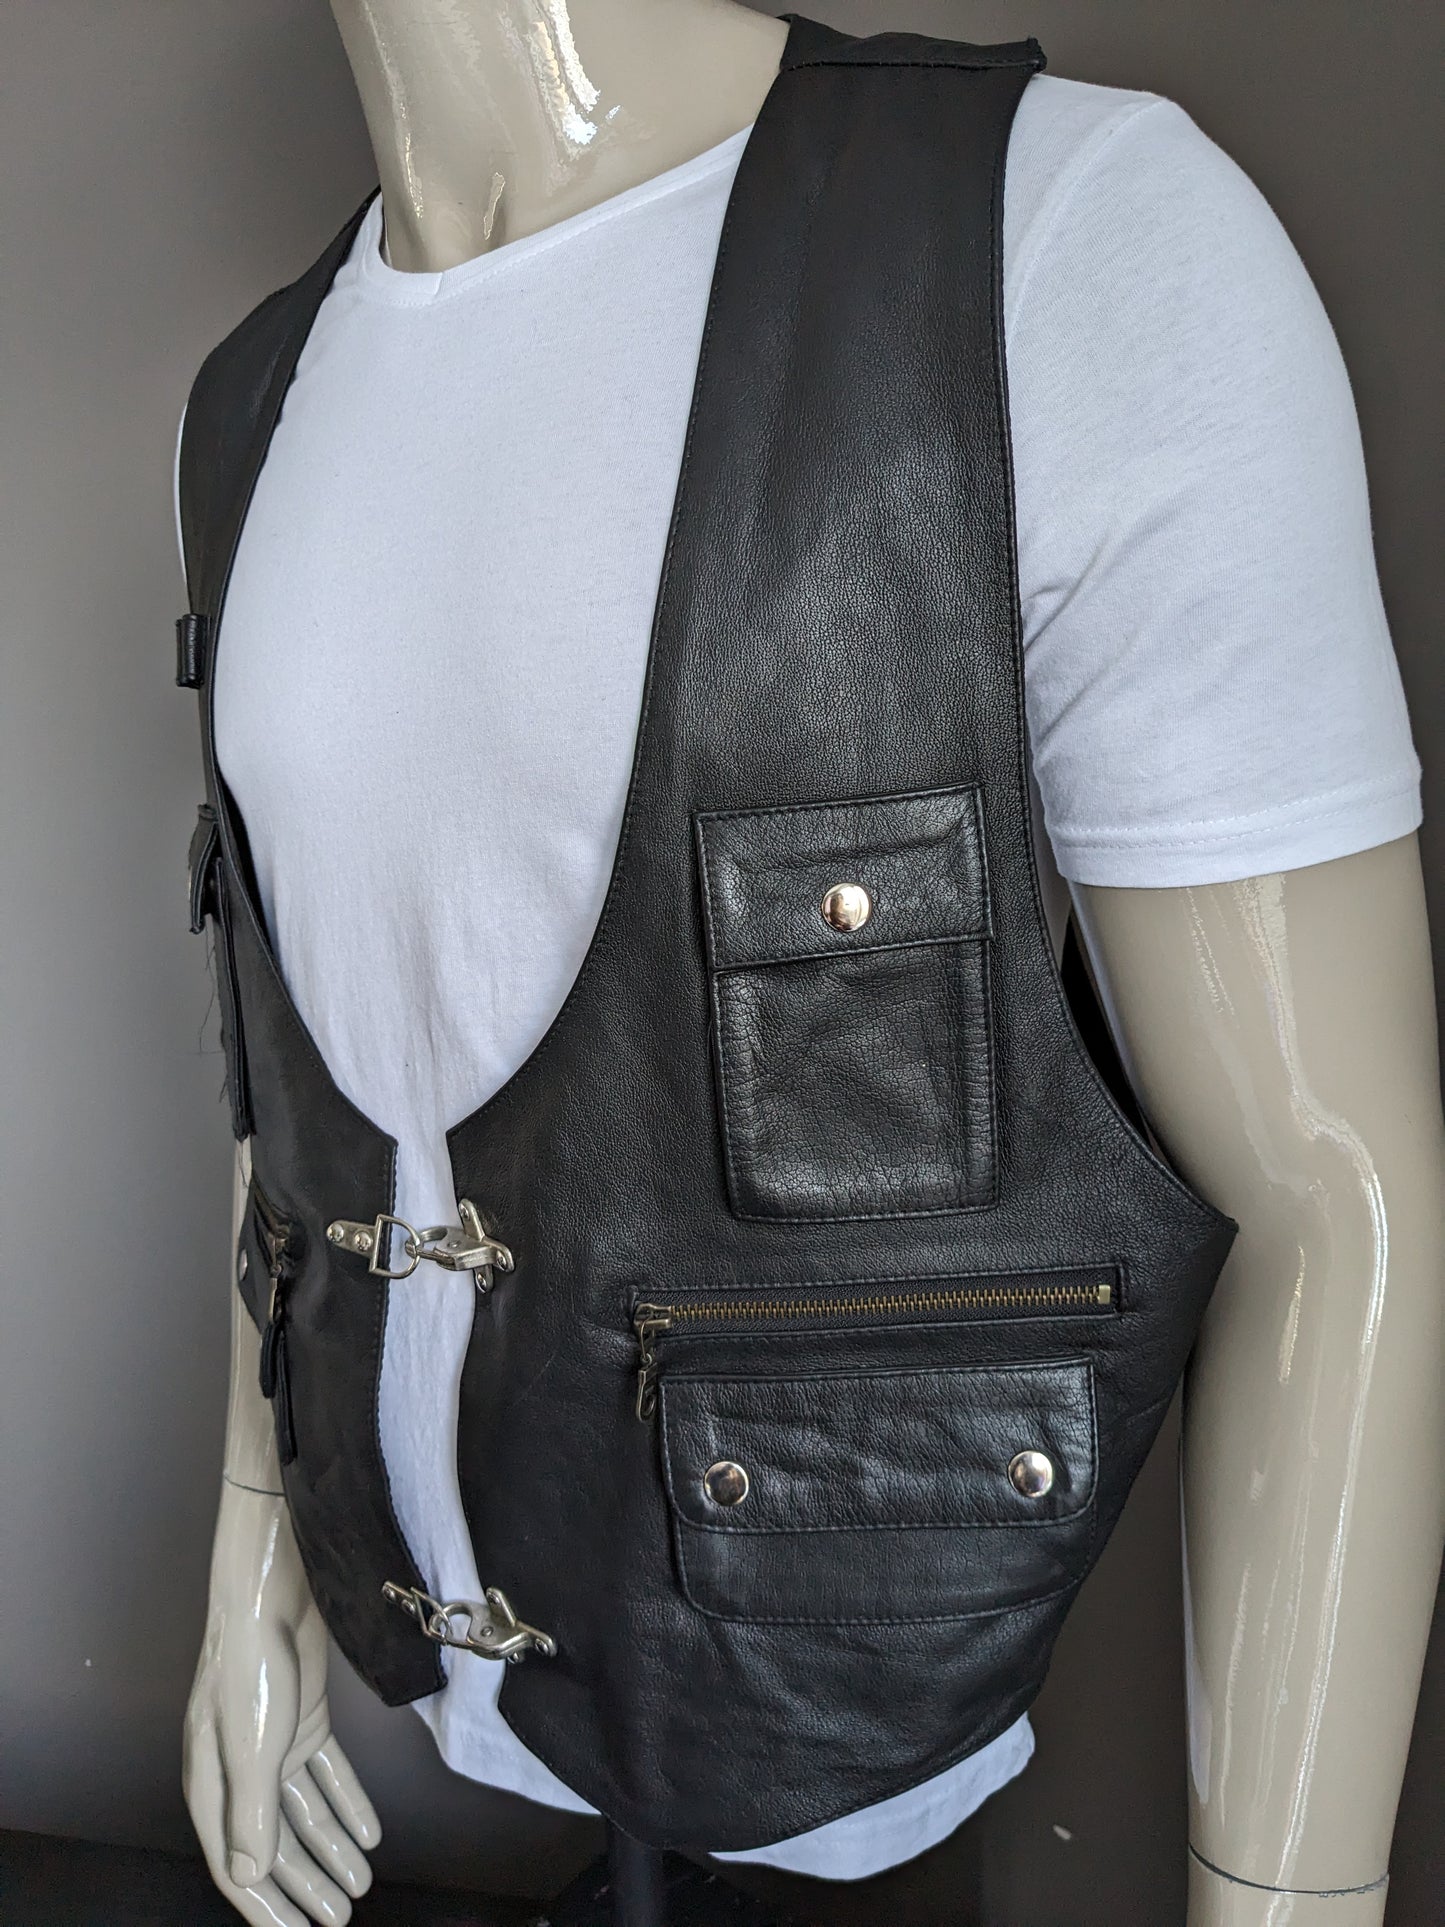 Vintage Mom Fashion dubbelzijdig leren gilet met veel zakken en gespen. Zwart. Maat XL.